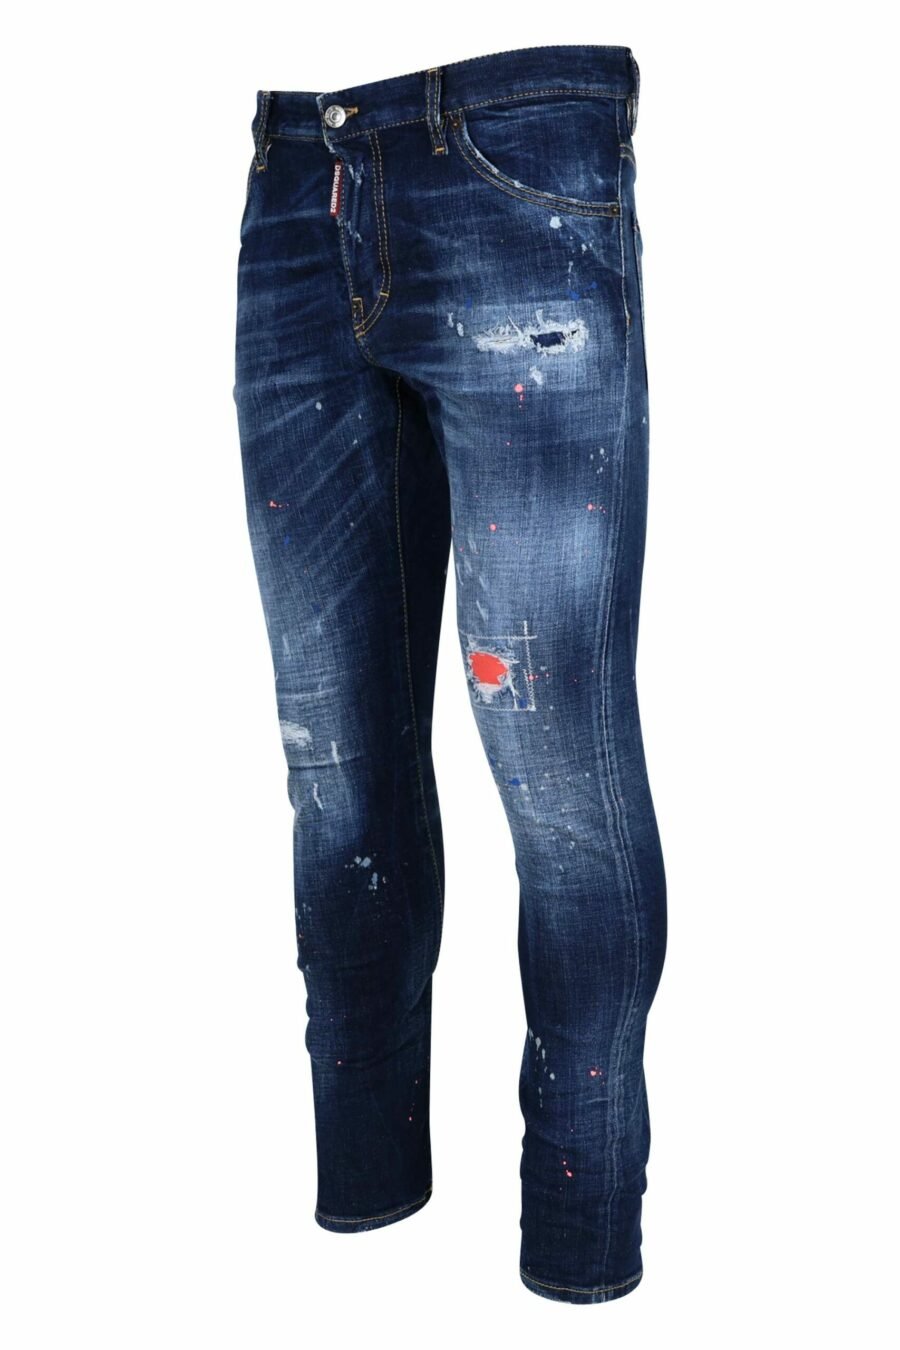 Jean bleu "sexy twist jean" porté avec de la peinture orange - 8054148308292 1 échelle